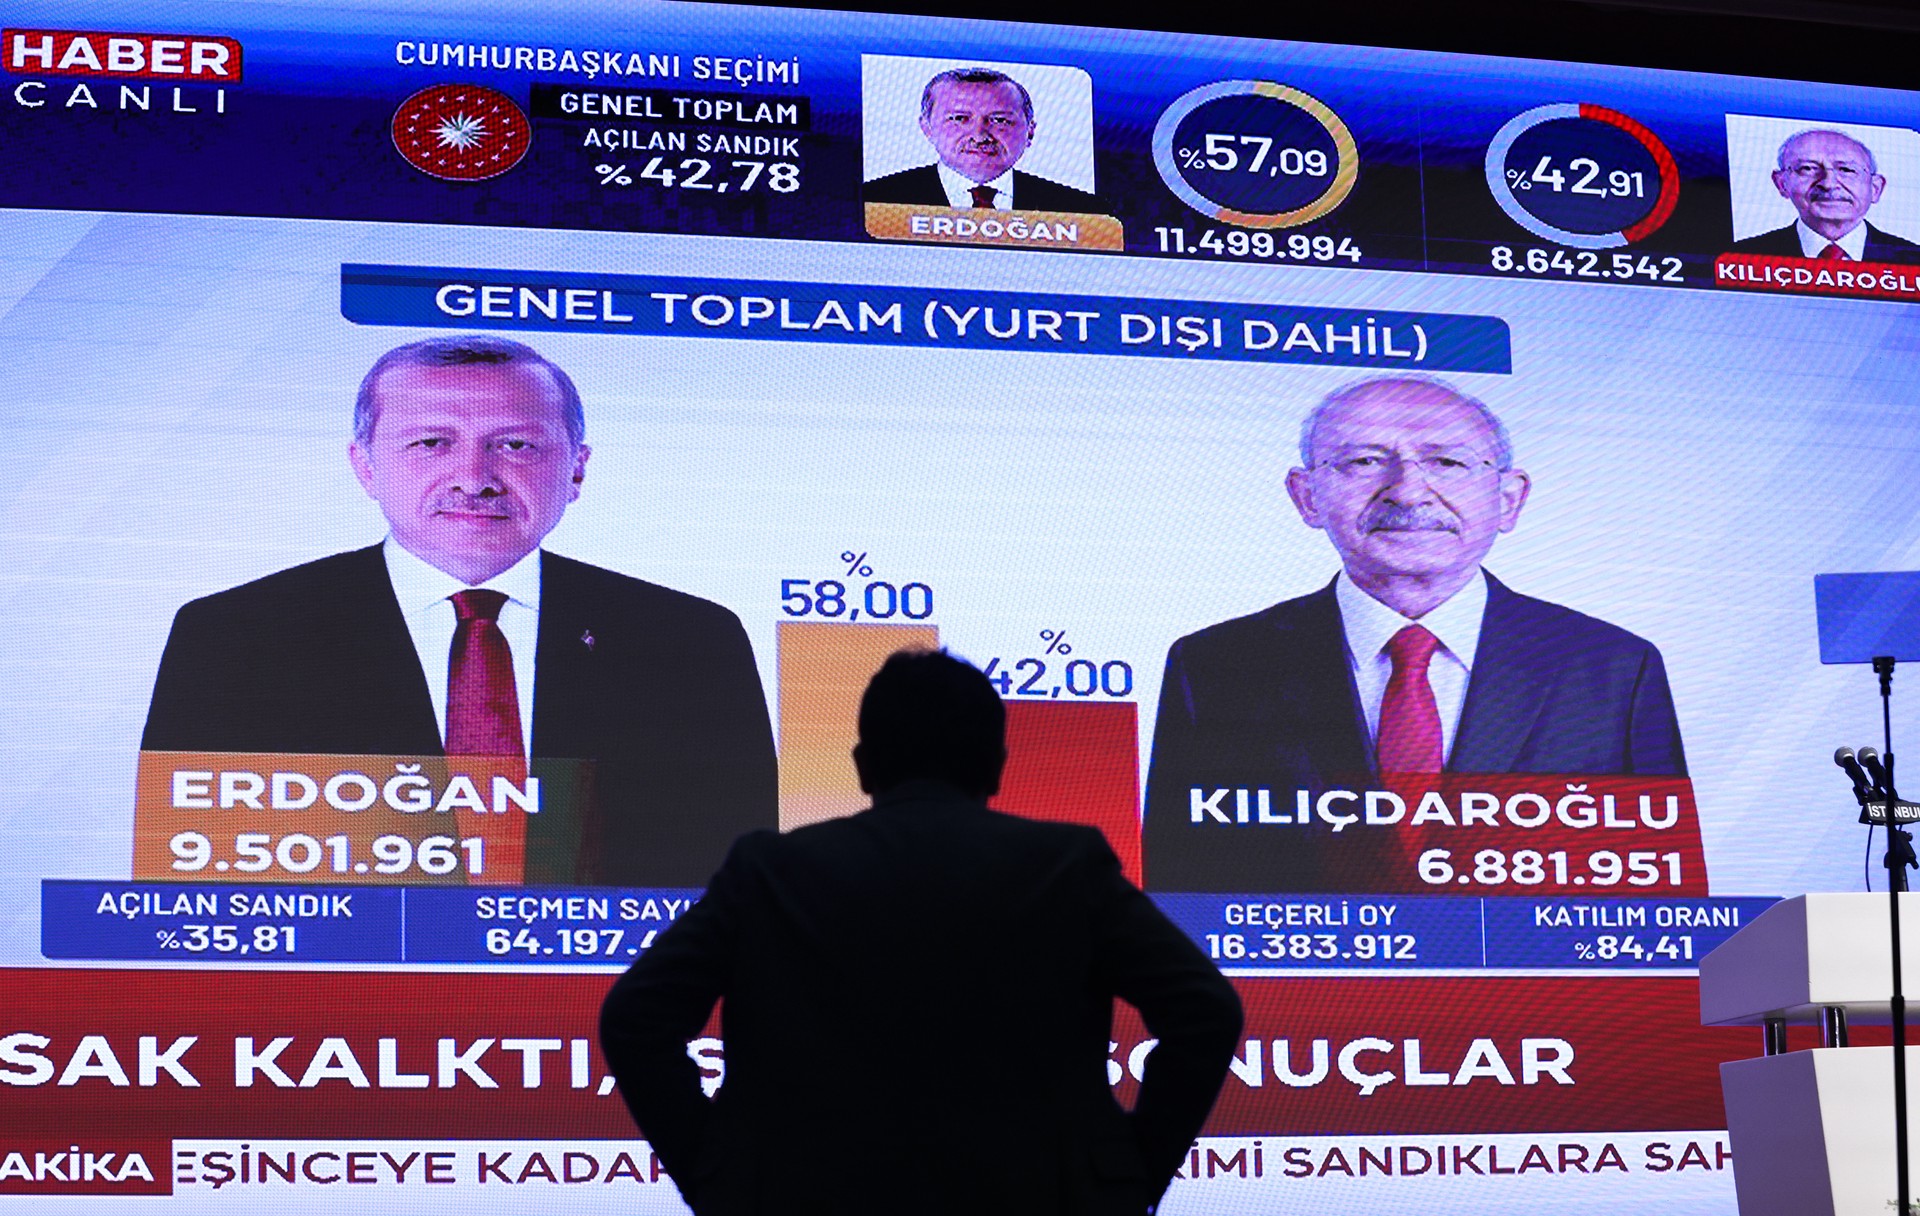 Эрдоган, по предварительным данным, побеждает во втором туре выборов президента Турции